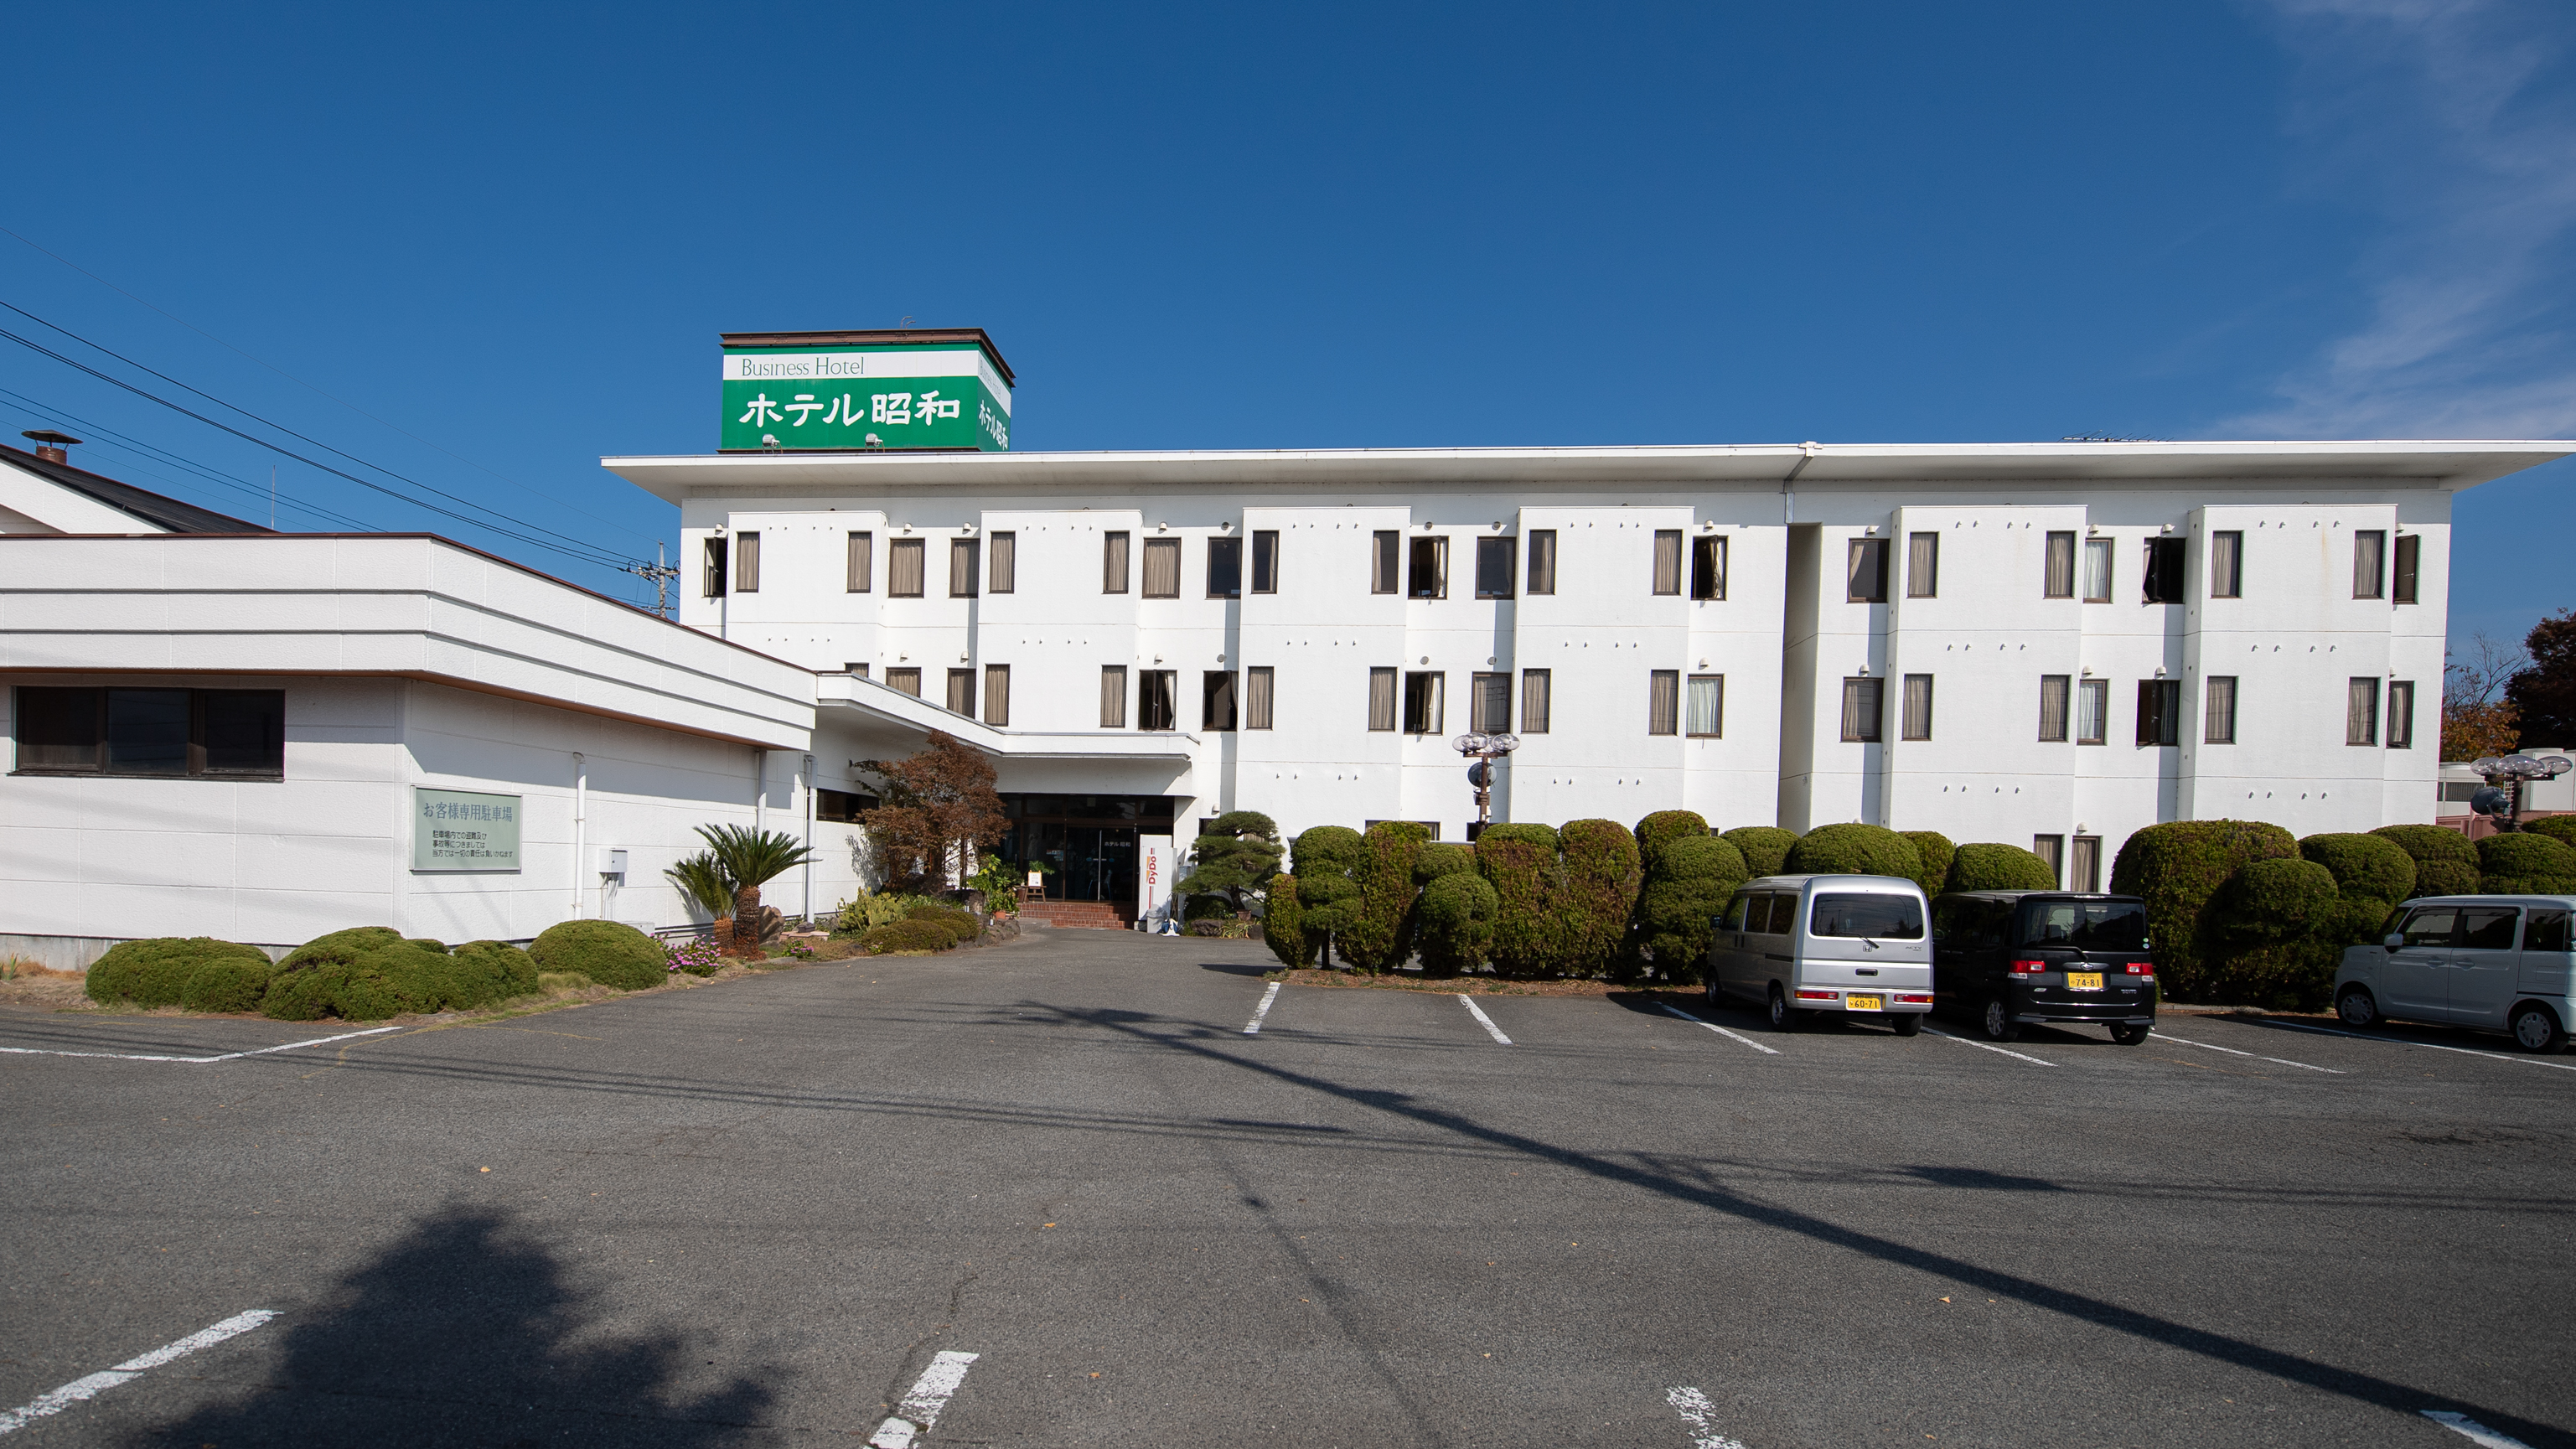 Hotel Showa (Yamanashi)